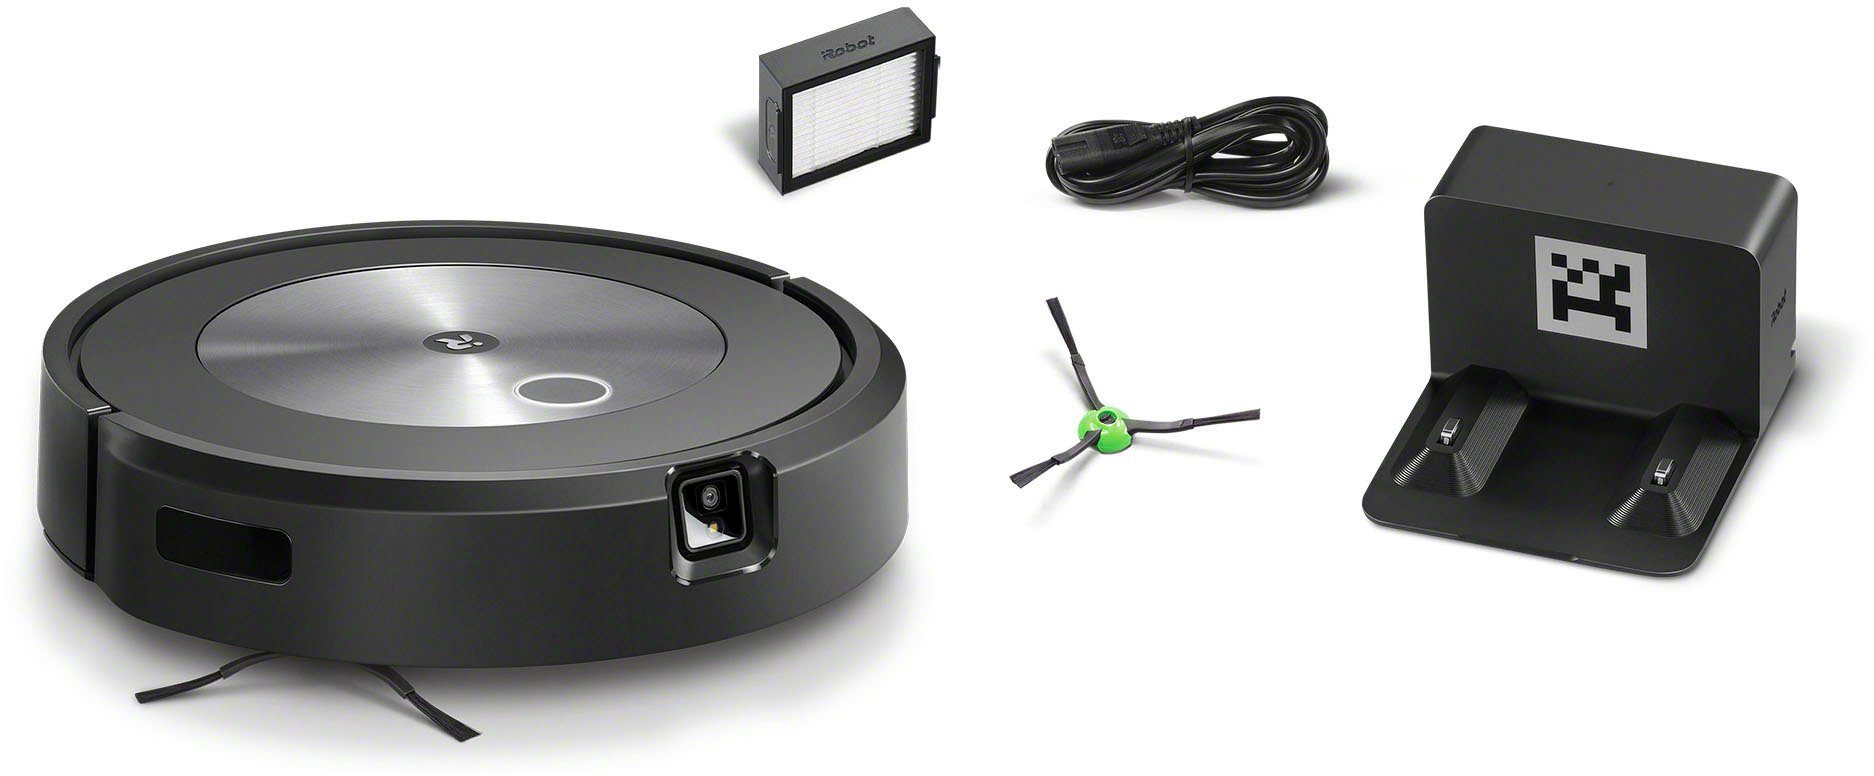 iRobot Saugroboter Objekterkennung (j7158), beutellos, WLAN-fähig, j7 Roomba® Kartierung